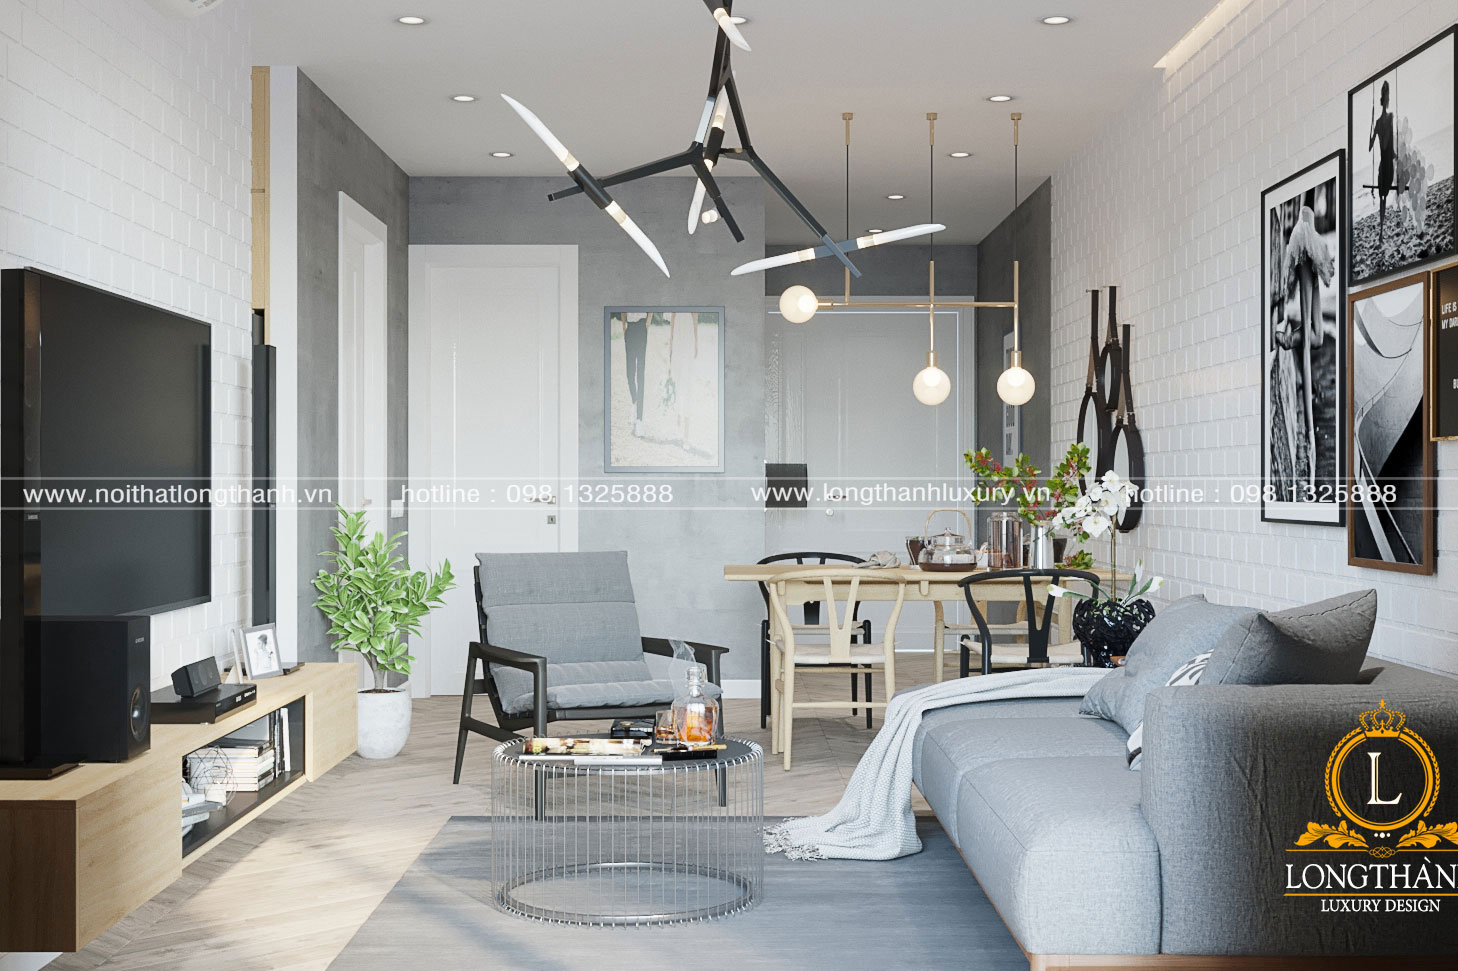 Thiết kế nội thất Scandinavian có phù hợp với không gian nhà Việt không?